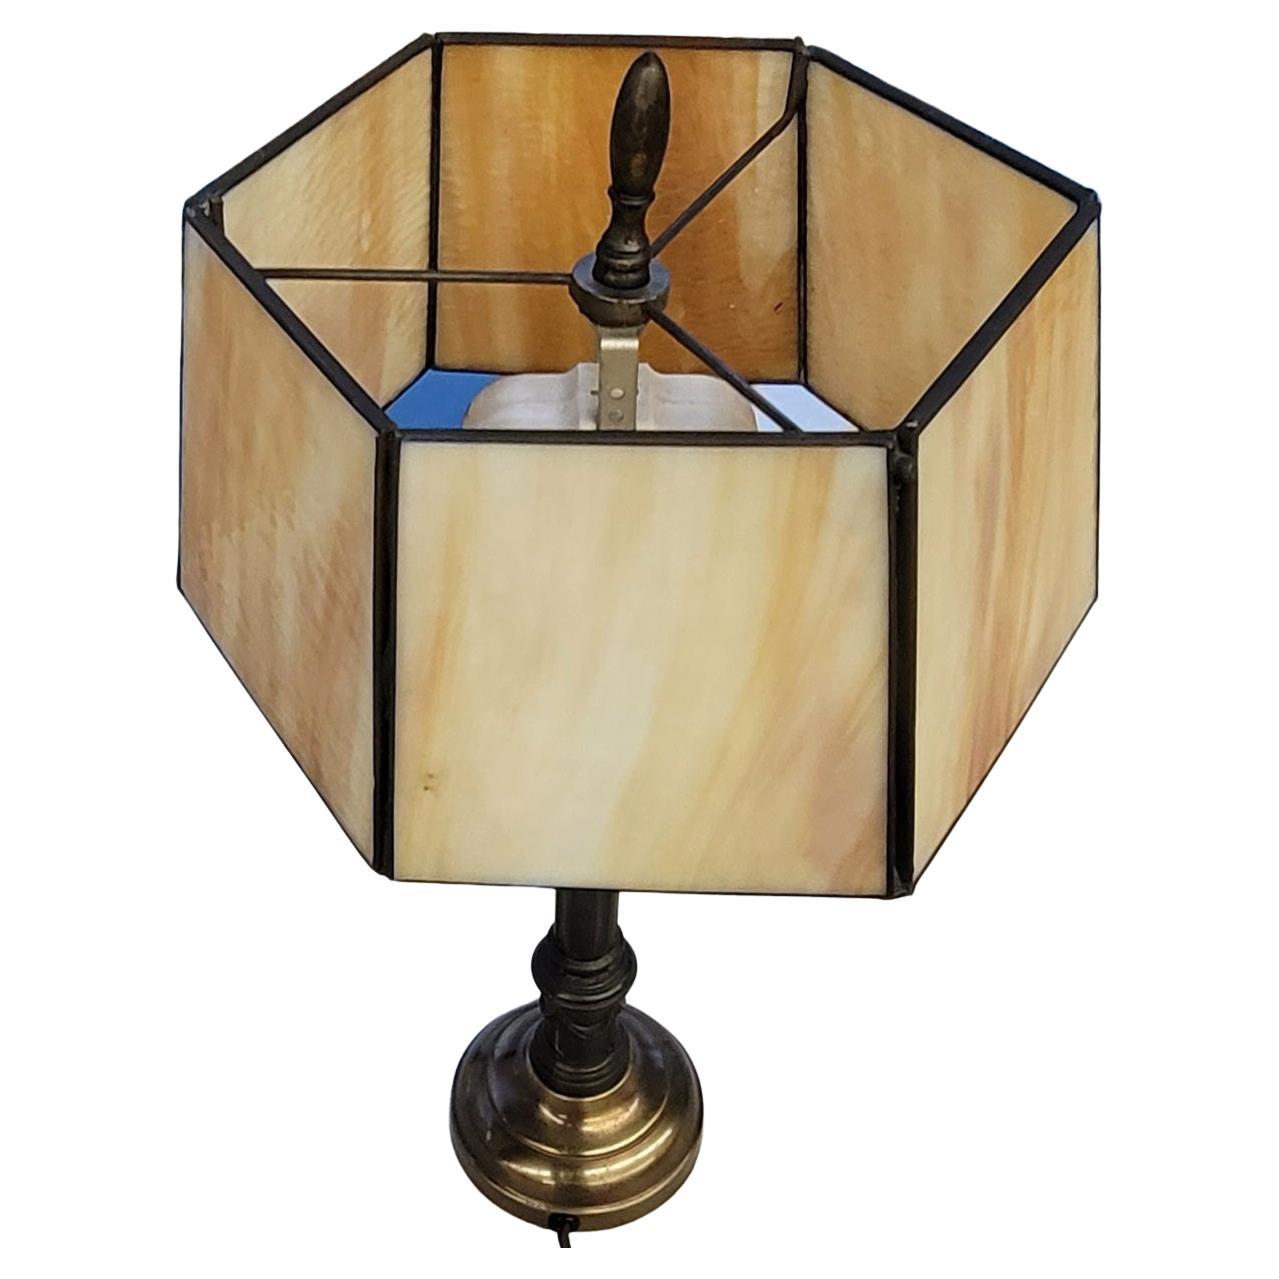 Eine sechseckige Schlackenglas-Tischlampe aus der Mitte des Jahrhunderts in gutem Zustand.
Misst 9,5